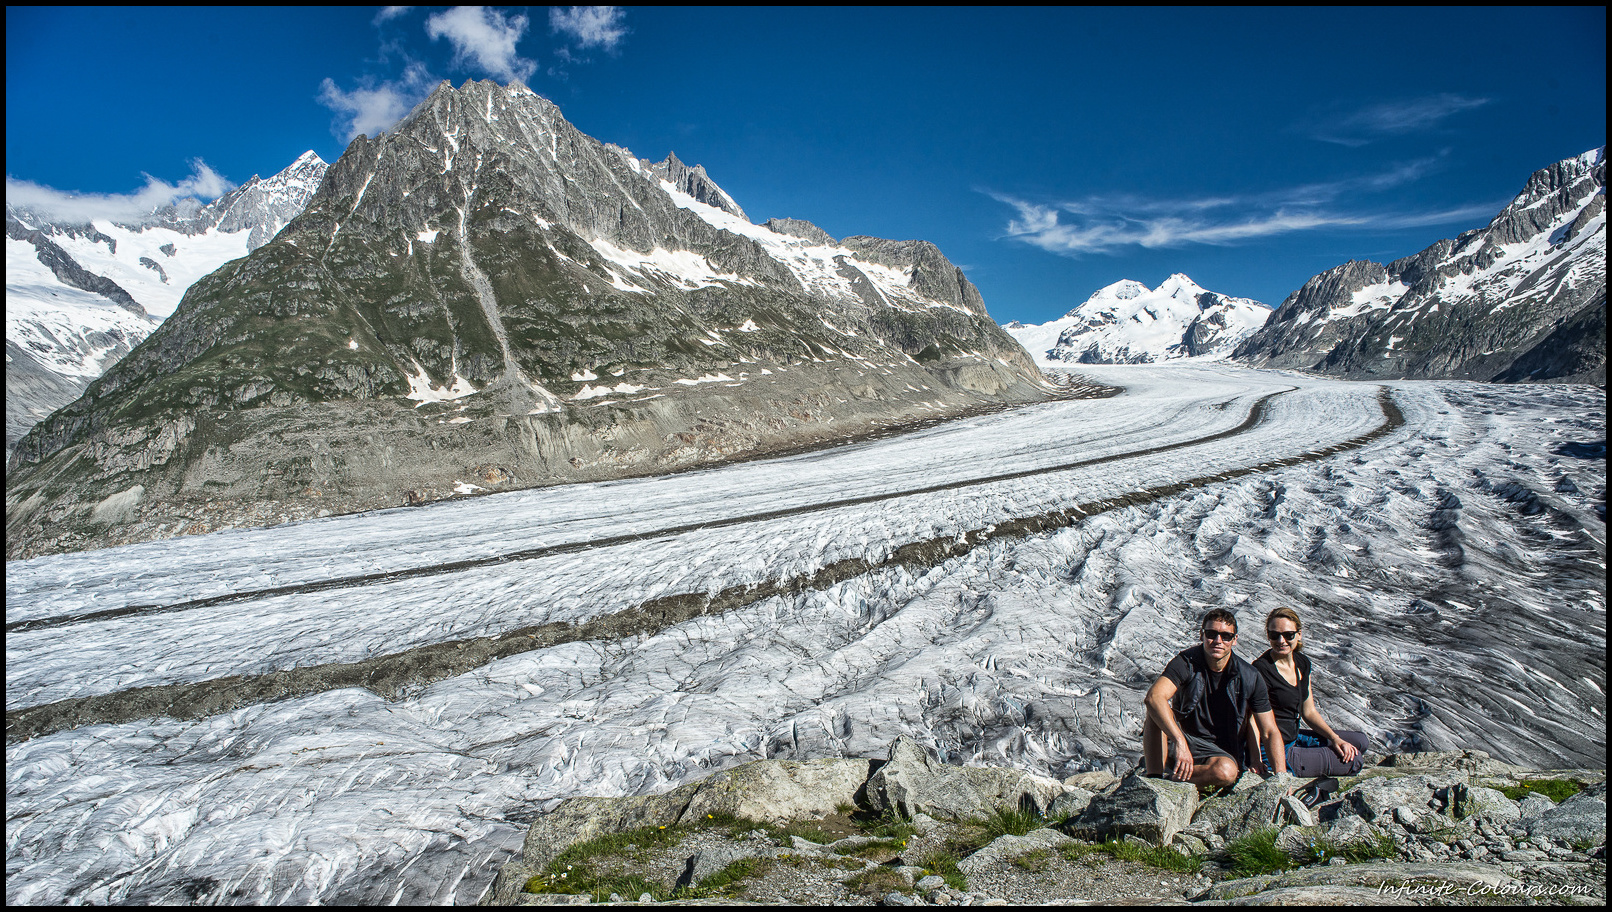 Aletschgletscher viewpoint